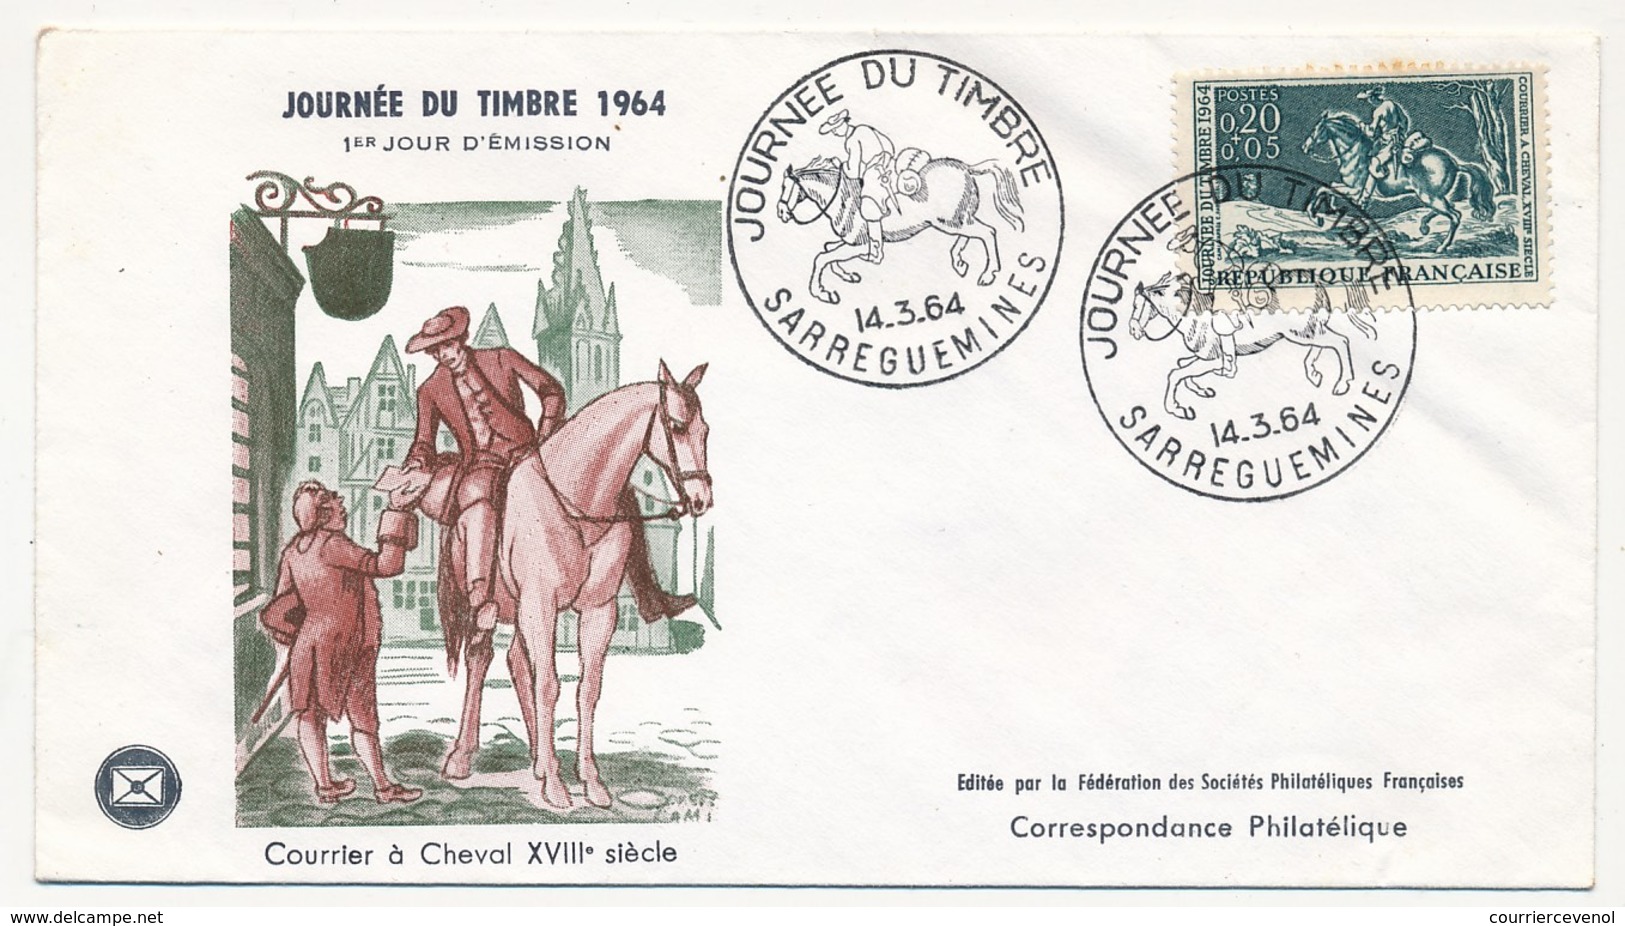 FRANCE - Enveloppe FDC - Journée Du Timbre 1964 (Courrier à Cheval XVIIIeme Siècle) - SARREGUEMINES 14.3.1964 - Journée Du Timbre